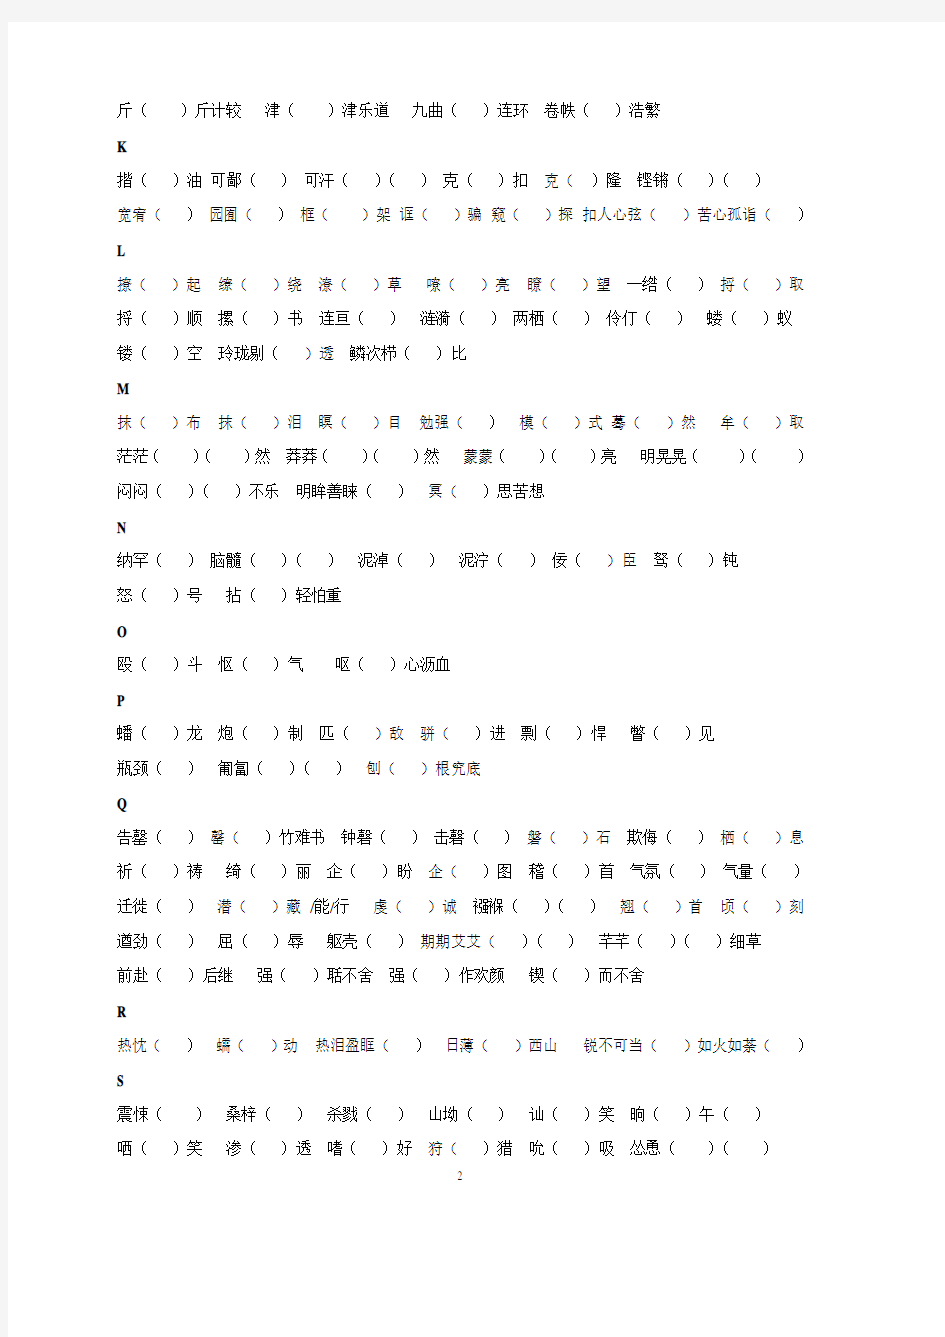 中考常考字音字形总结(2020年整理).pdf